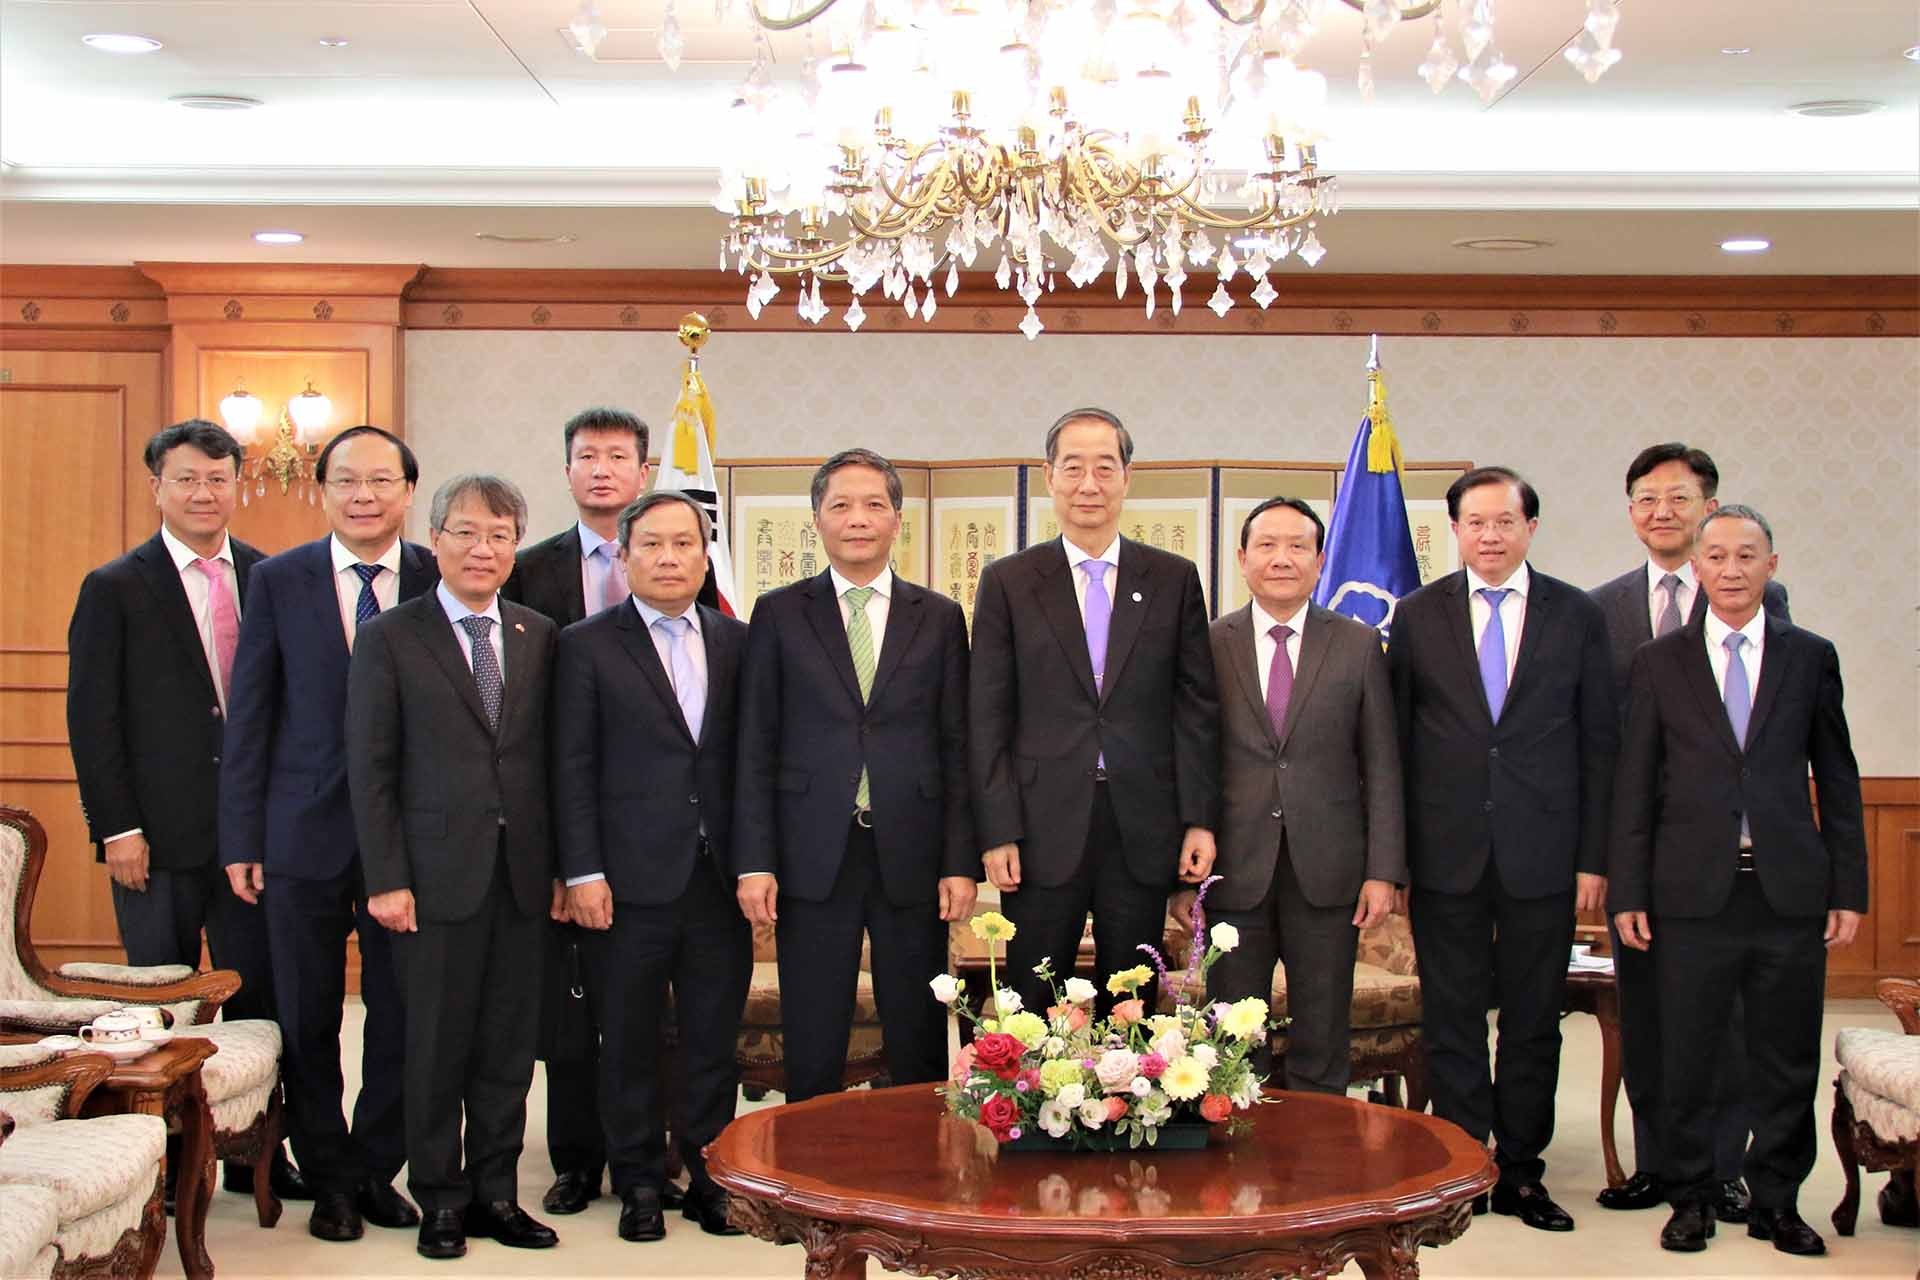 Trưởng ban Kinh tế Trung ương Trần Tuấn Anh và Thủ tướng Hàn Quốc Han Duck Soo cùng các đại biểu. (Nguồn: TTXVN)